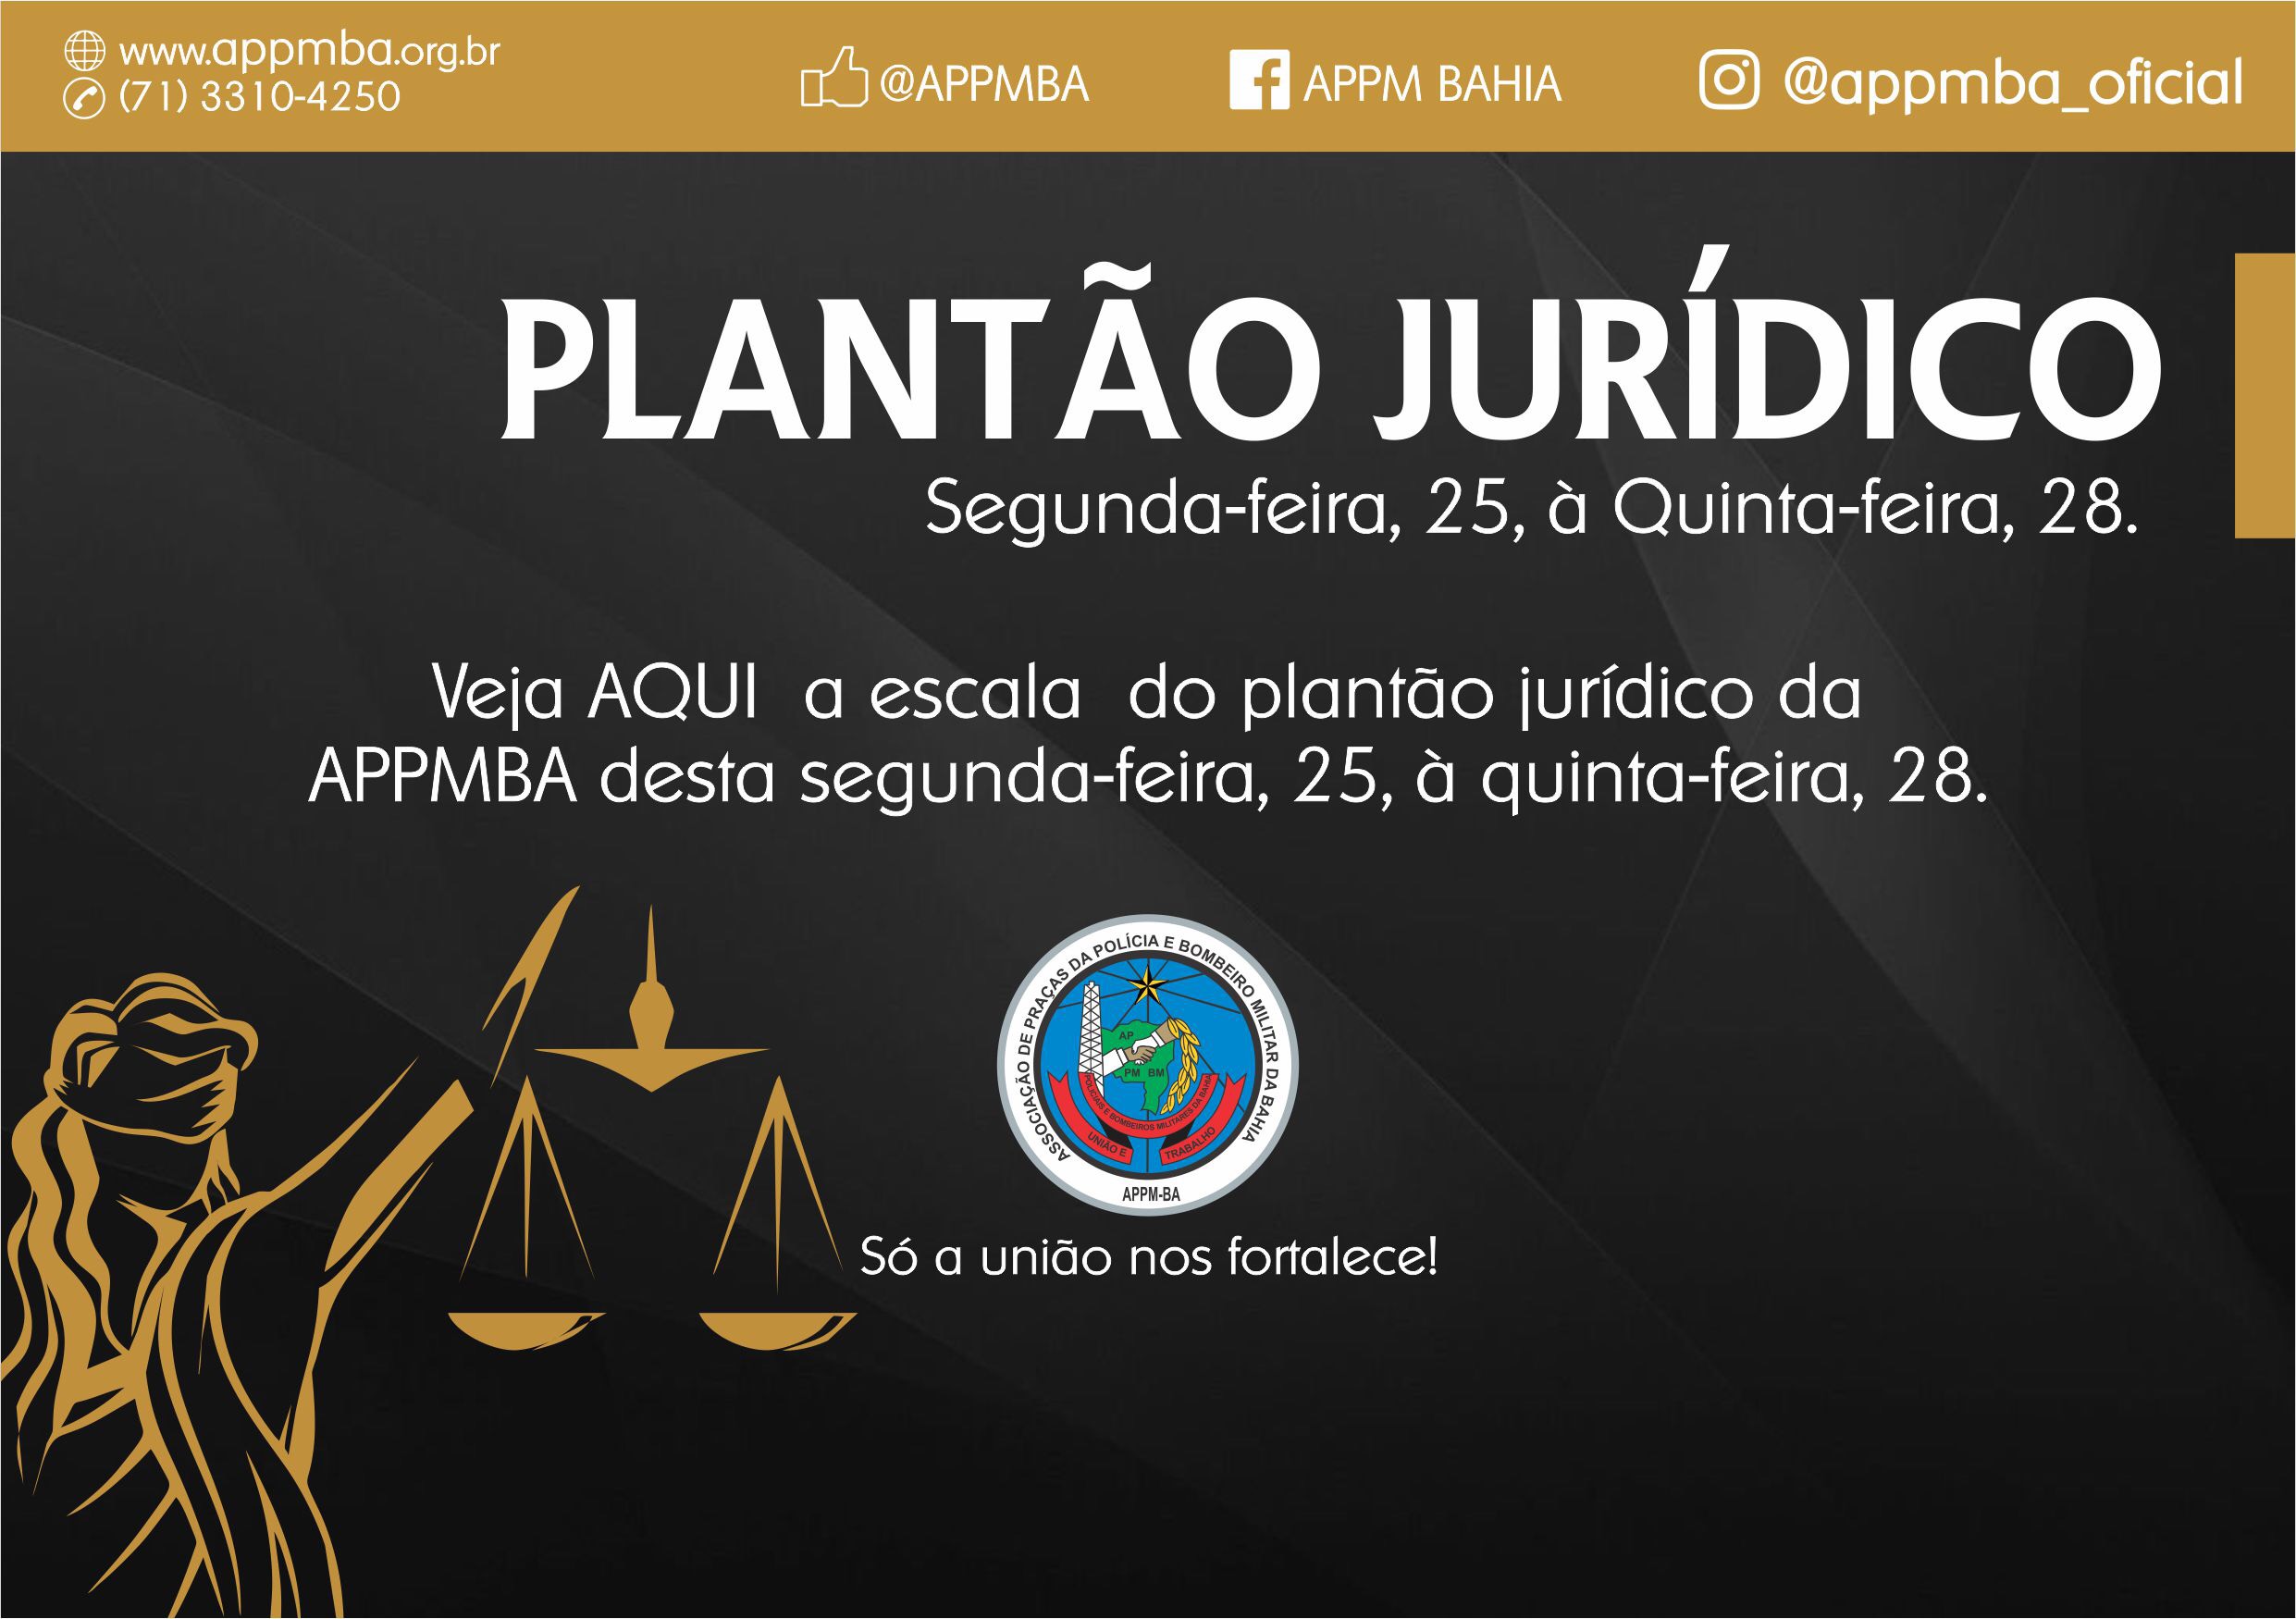 Plantão Jurídico APPM-BA, dias 25 à 28/2/2019